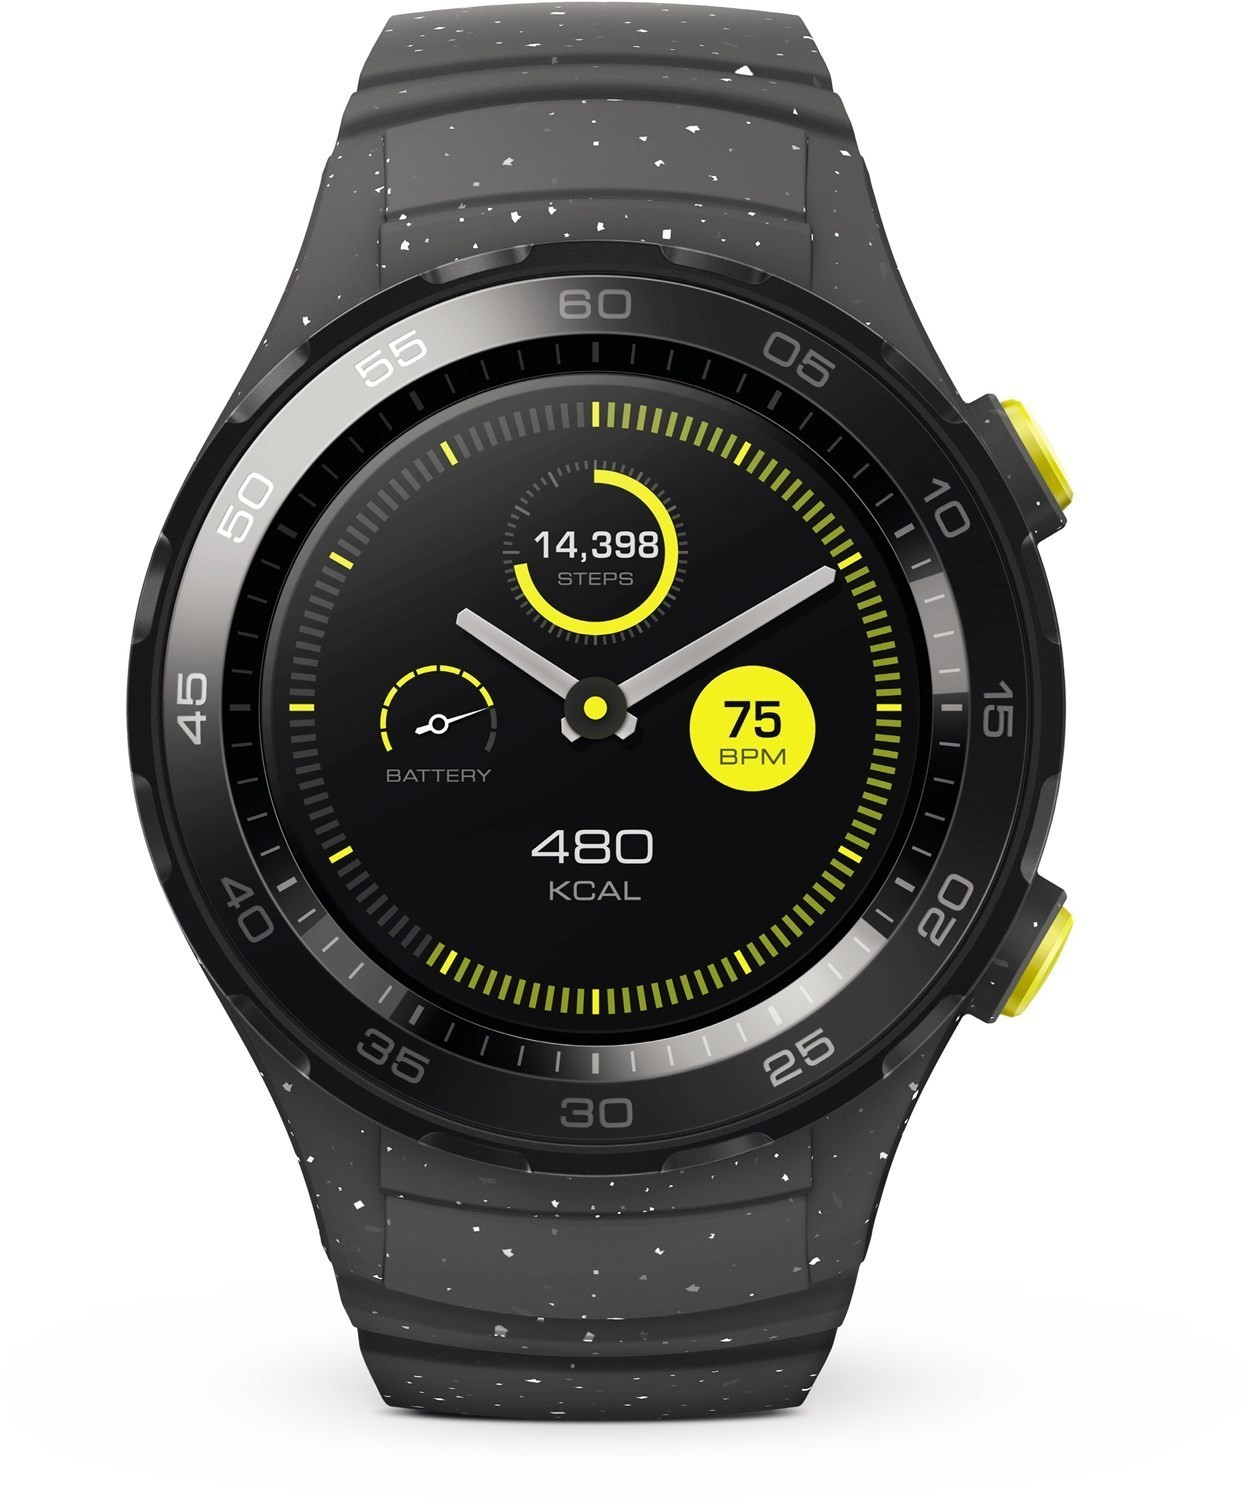 Huawei Watch 2 sports grey